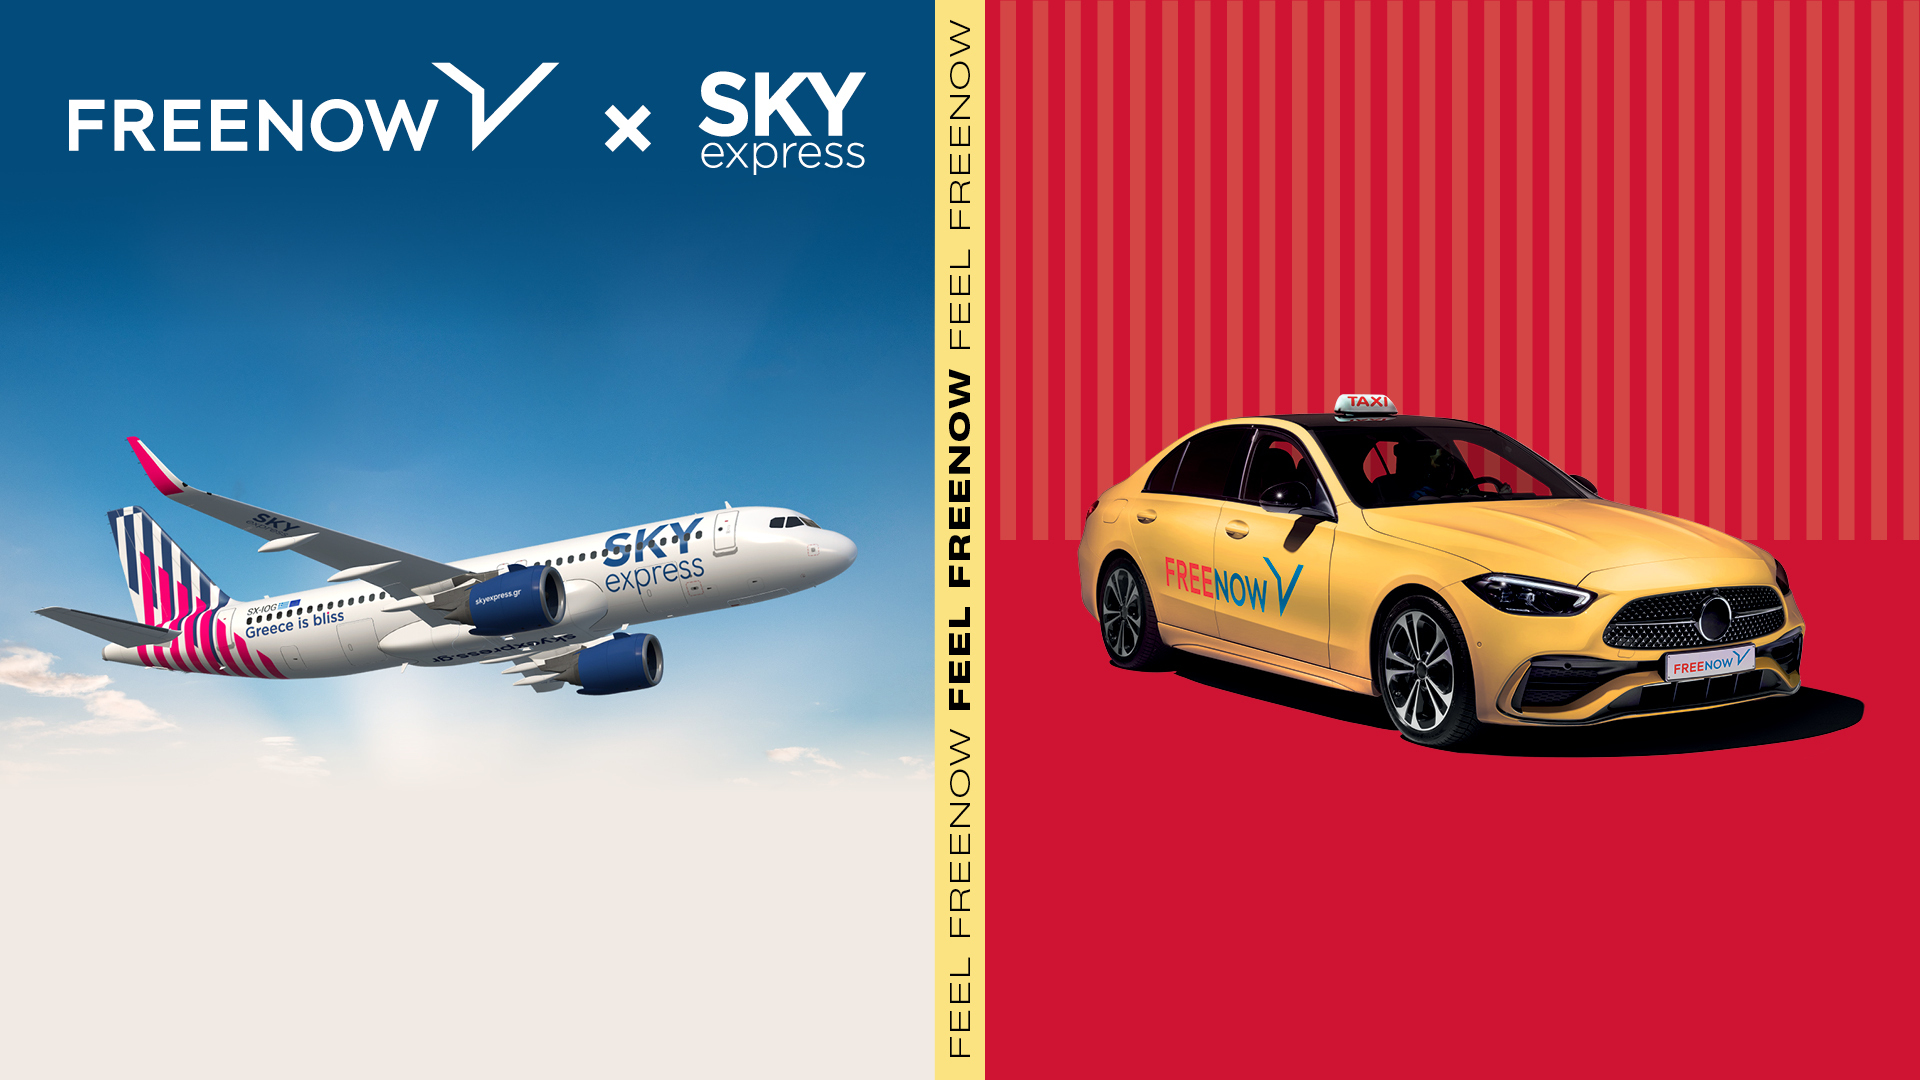 Η FREENOW συνεργάζεται με τη SKY express για να προσφέρουν την απόλυτη ταξιδιωτική εμπειρία